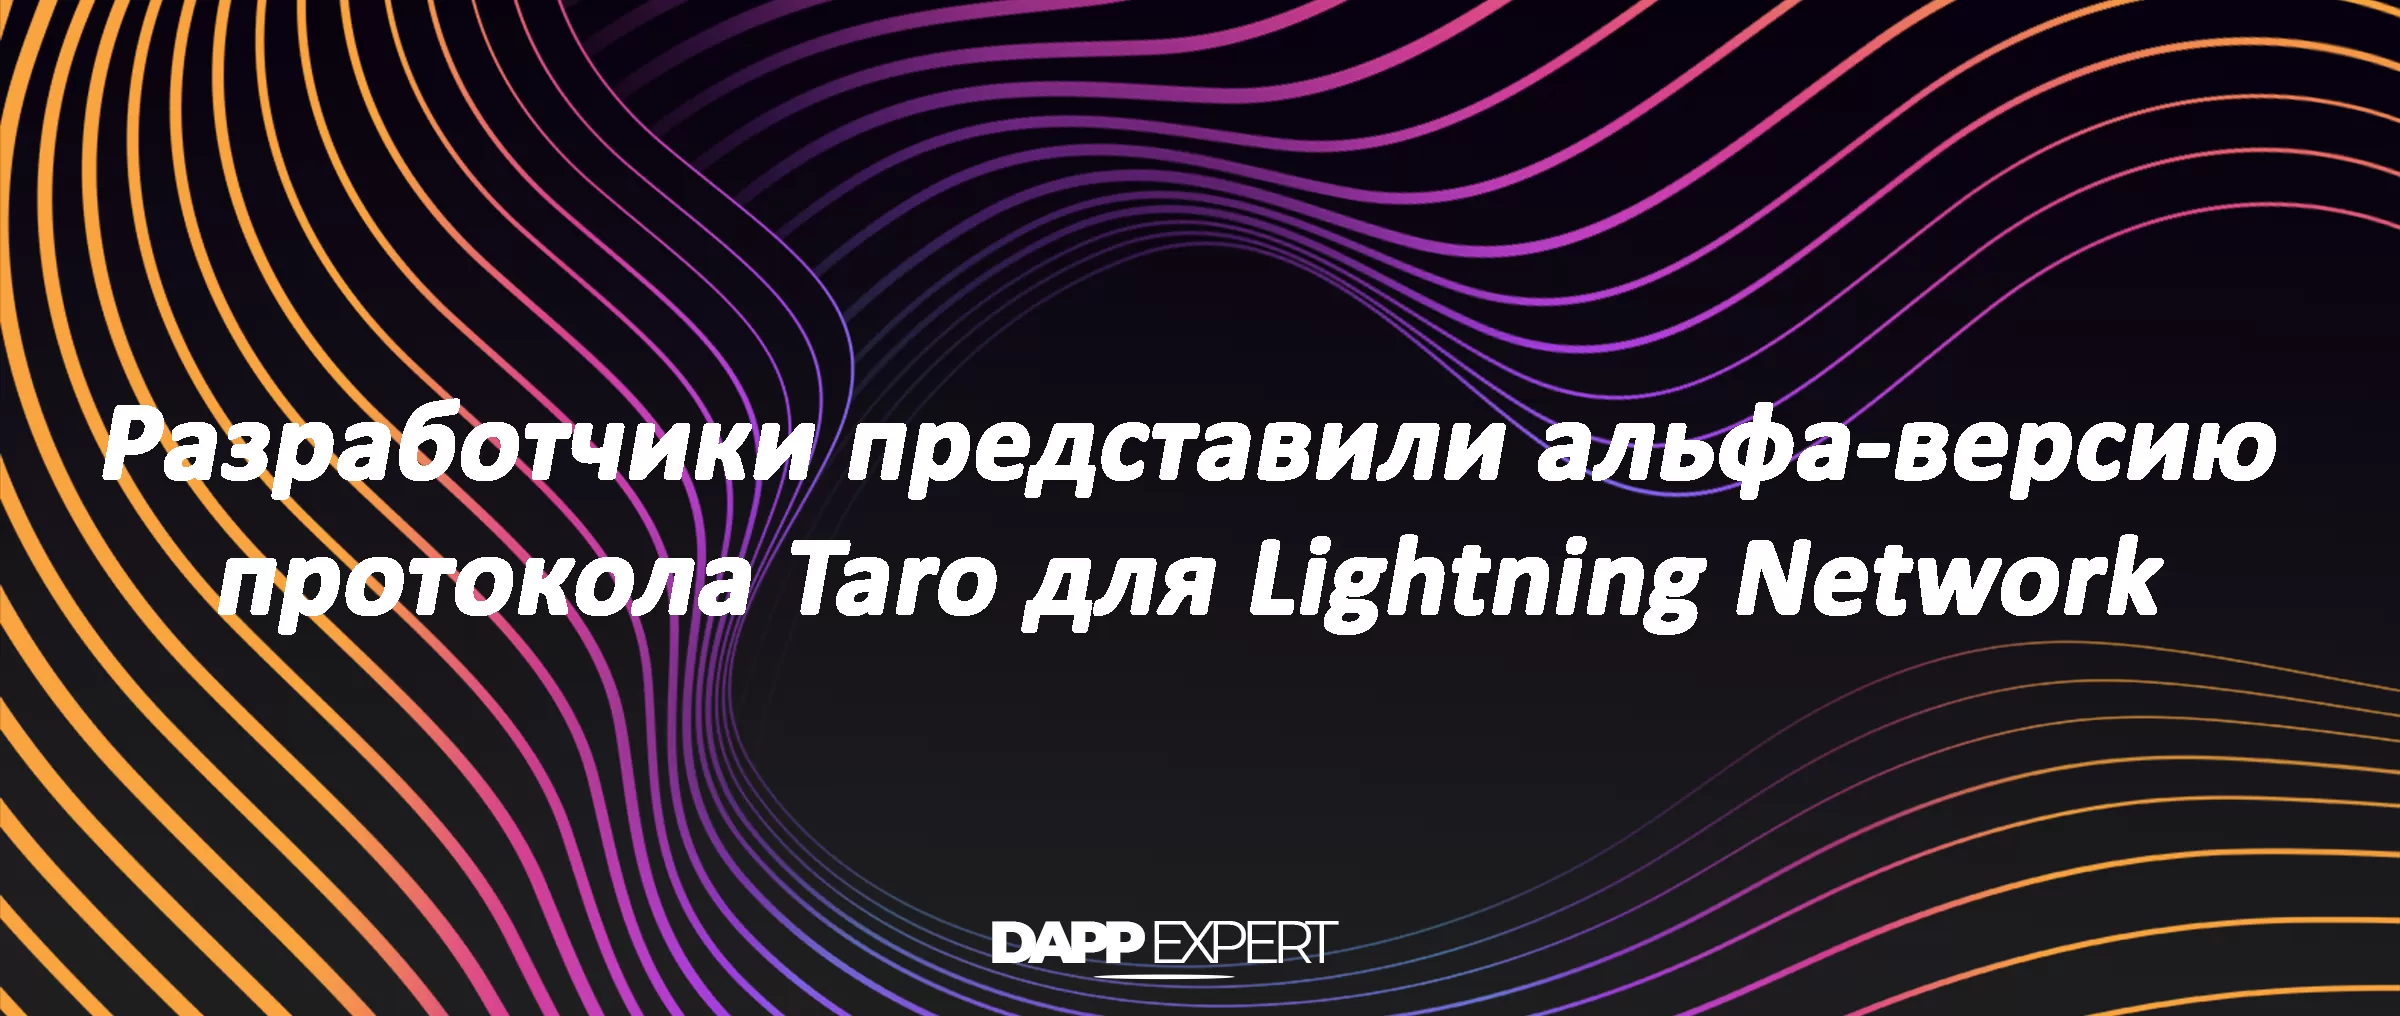 Разработчики представили альфа-версию протокола Taro для Lightning Network